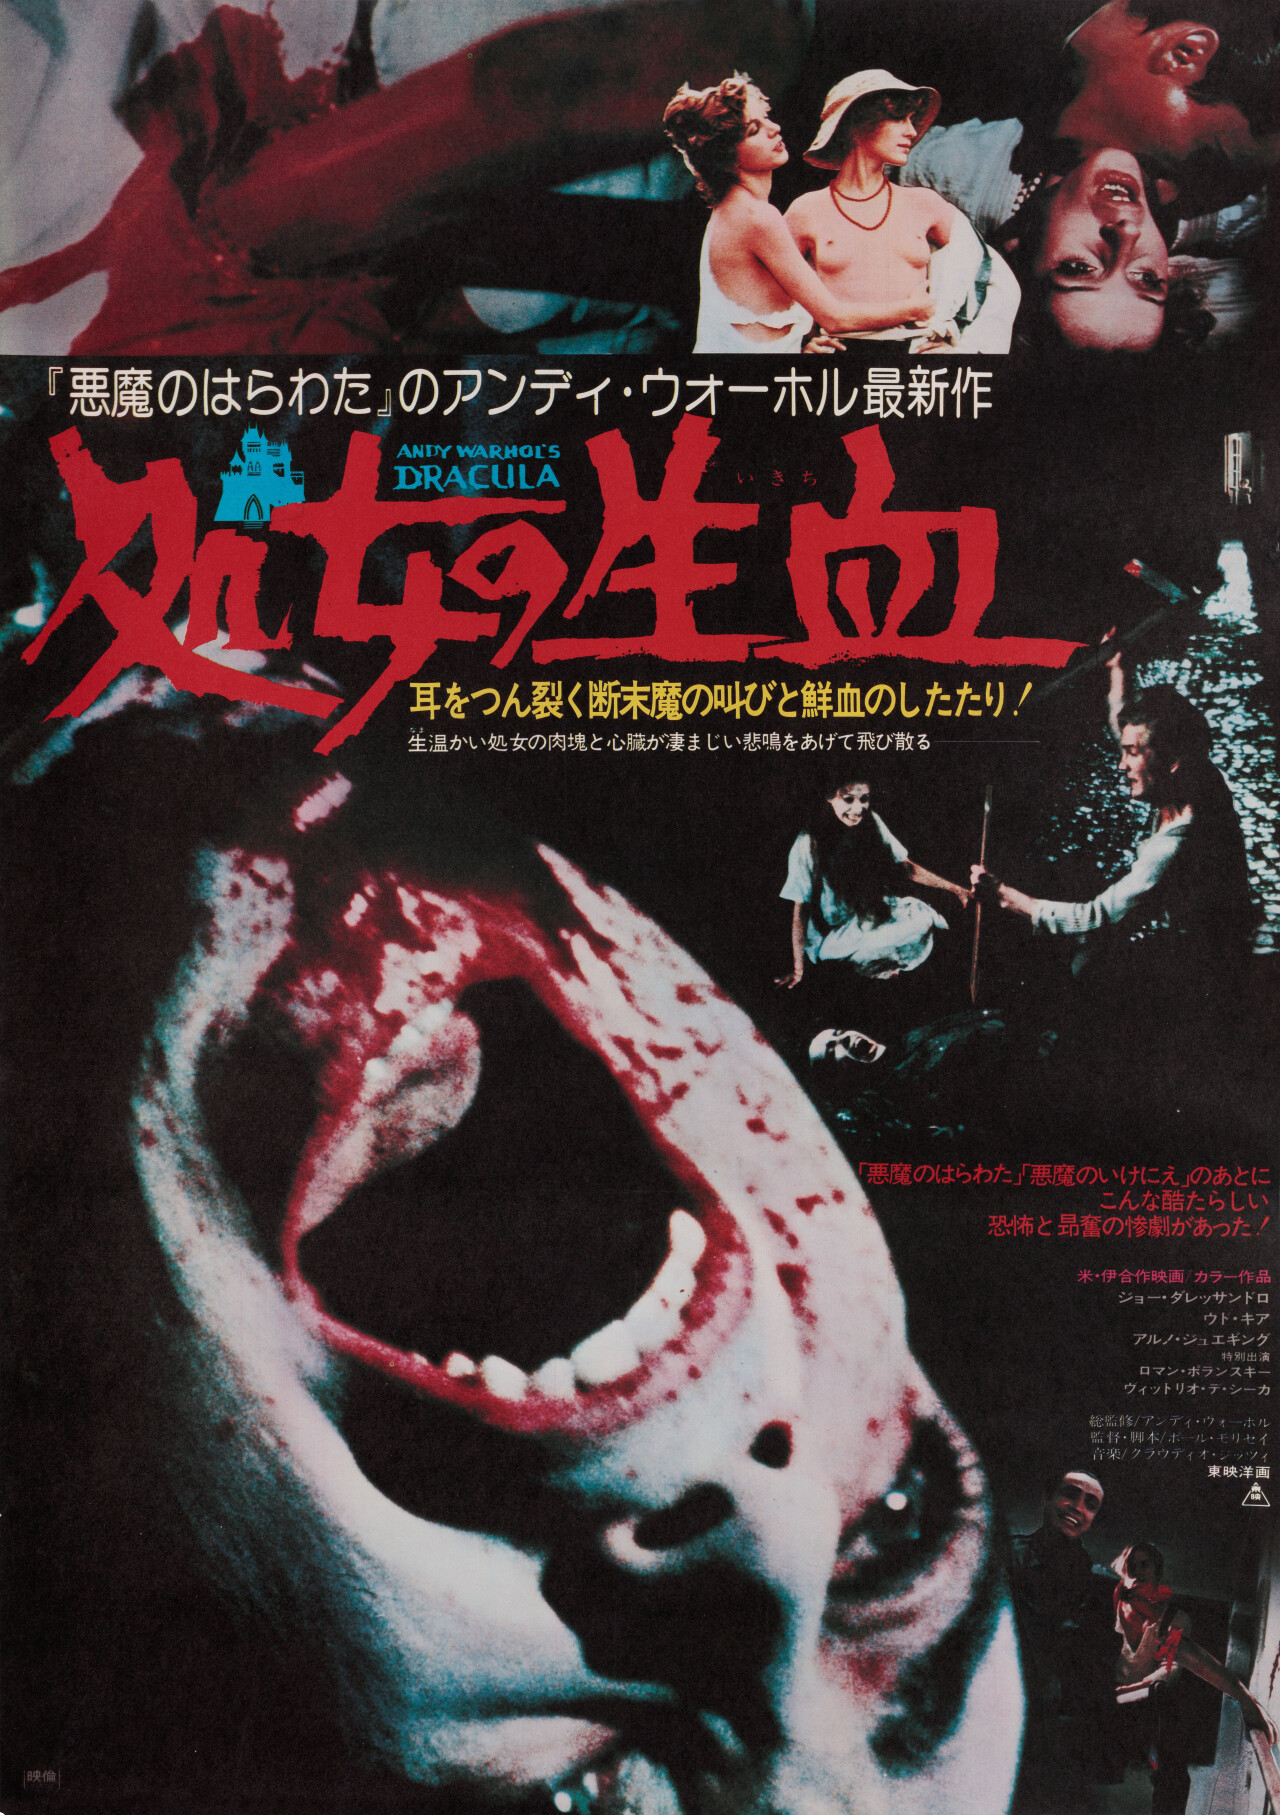 Кровь для Дракулы (Andy Warhols Dracula, 1974), режиссёр Пол Моррисси, японский постер к фильму (ужасы, 1975 год)